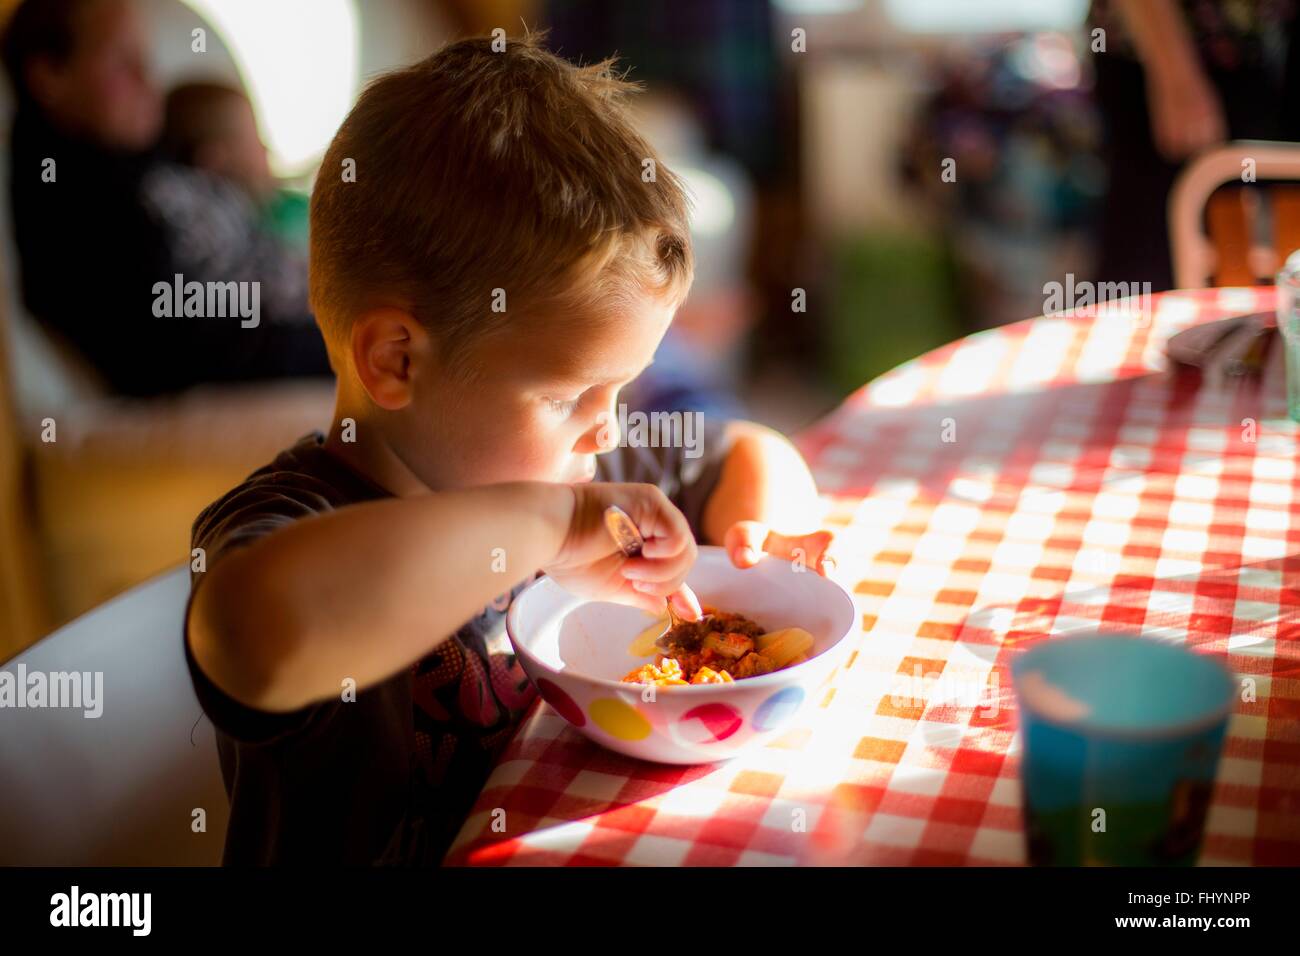 Modello rilasciato. Ragazzo seduto a tavola a mangiare un pasto. Foto Stock